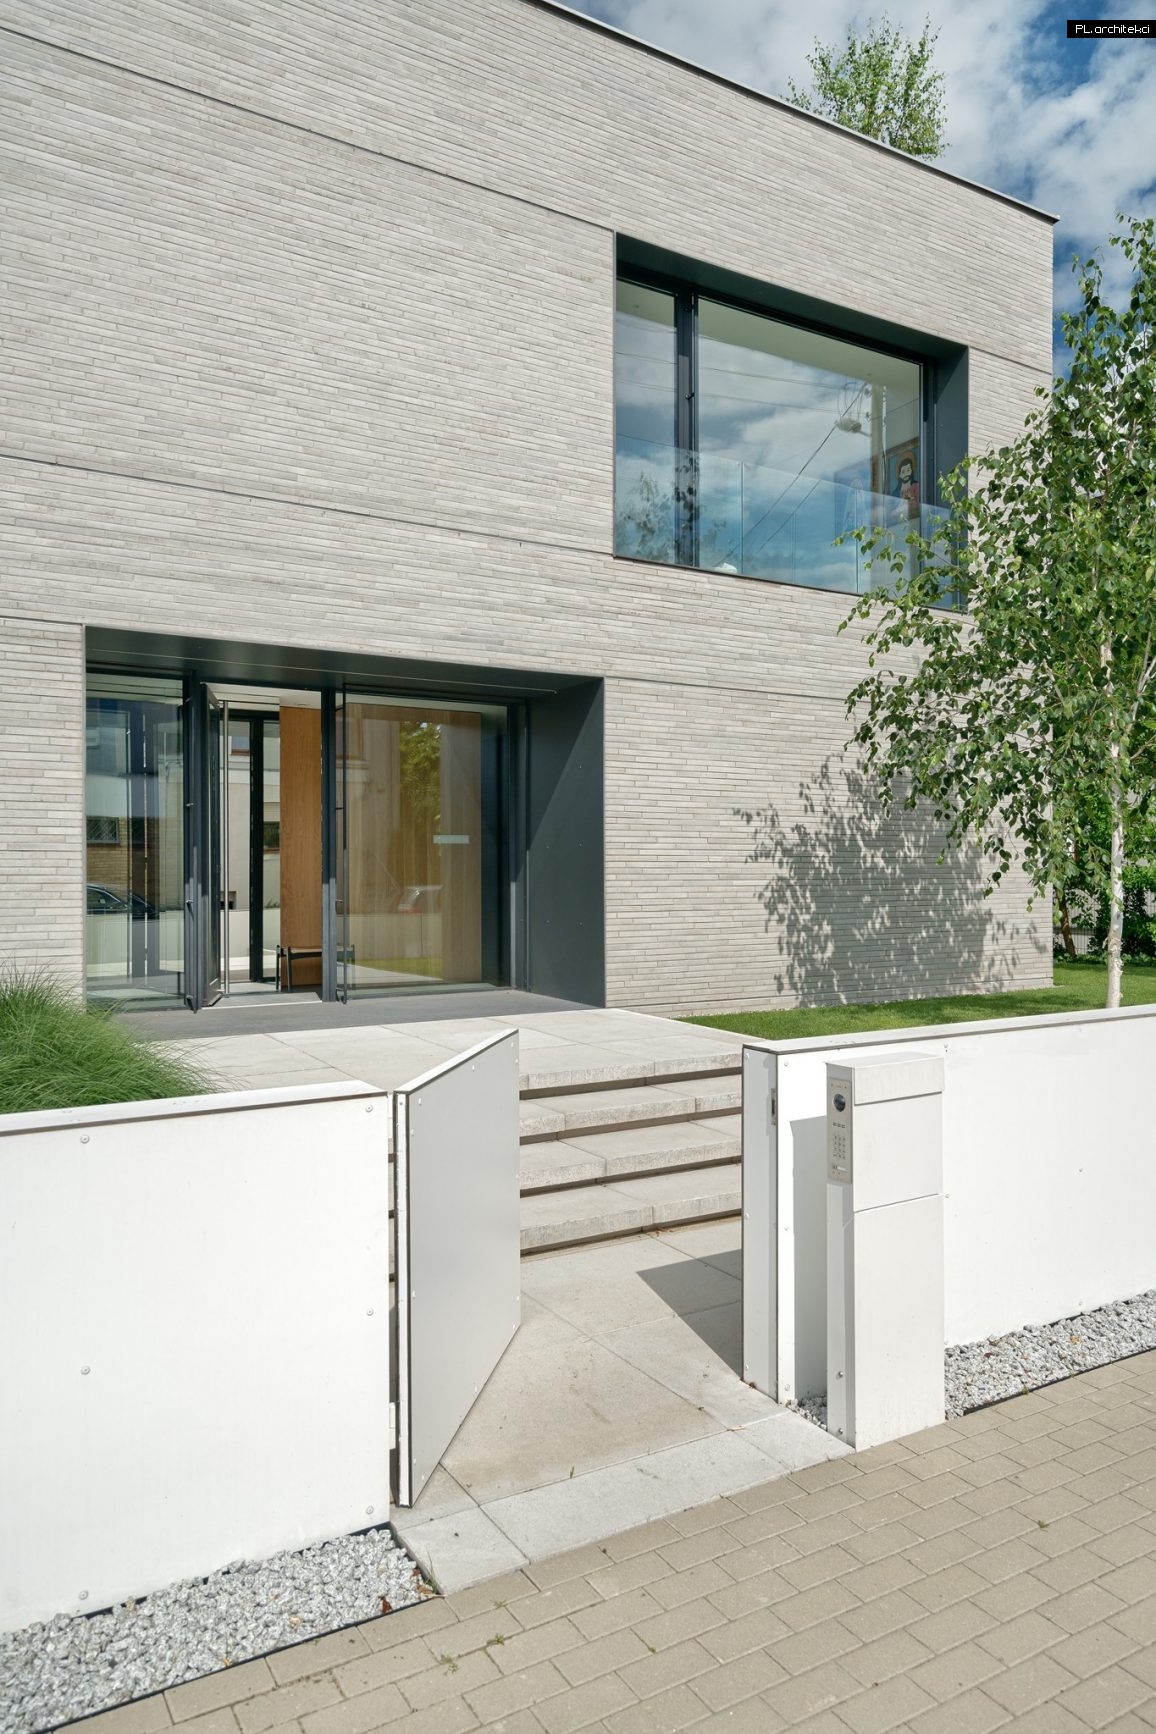 dom rozcięty minimalistyczny dom kostka poznań plarchitekci